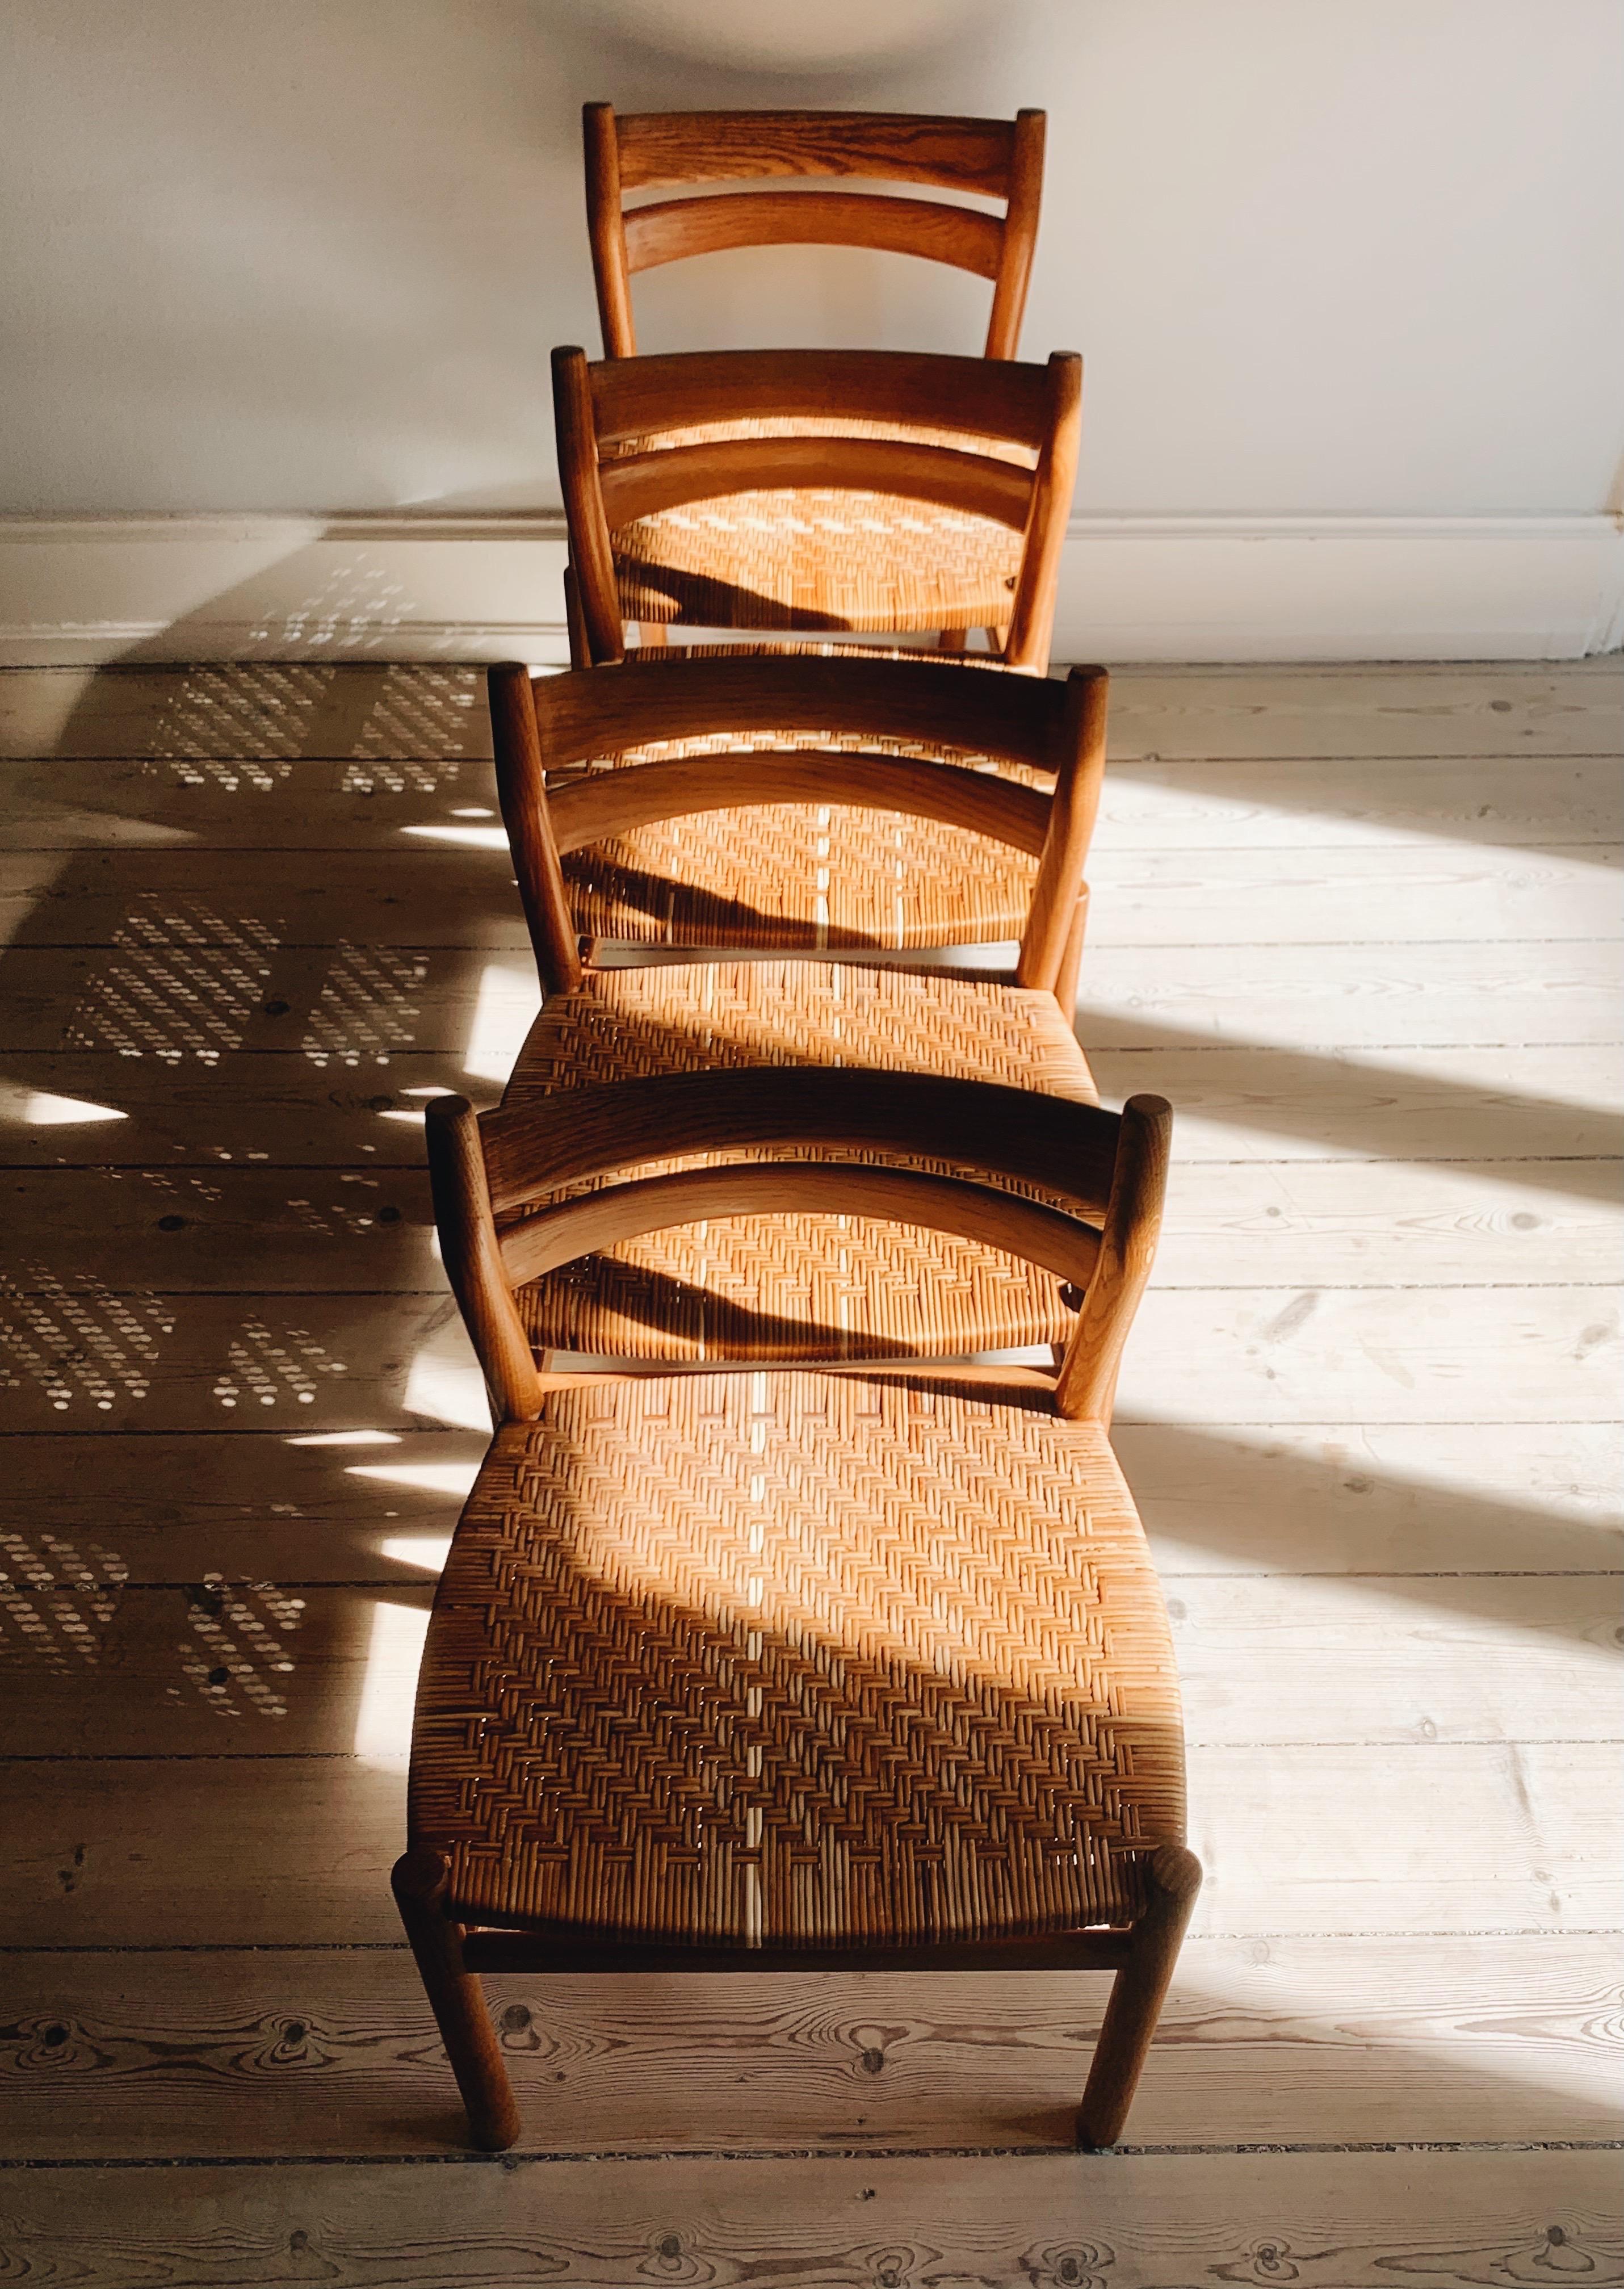 Quatre chaises BM1 de Børge Mogensen. Les chaises sont fabriquées en chêne massif et en cannes tressées. Les chaises sont produites à A&M. A.I.C. Madsen Fabrikant vers les années 1960. Les quatre chaises ont des sièges en rotin d'origine, qui ont